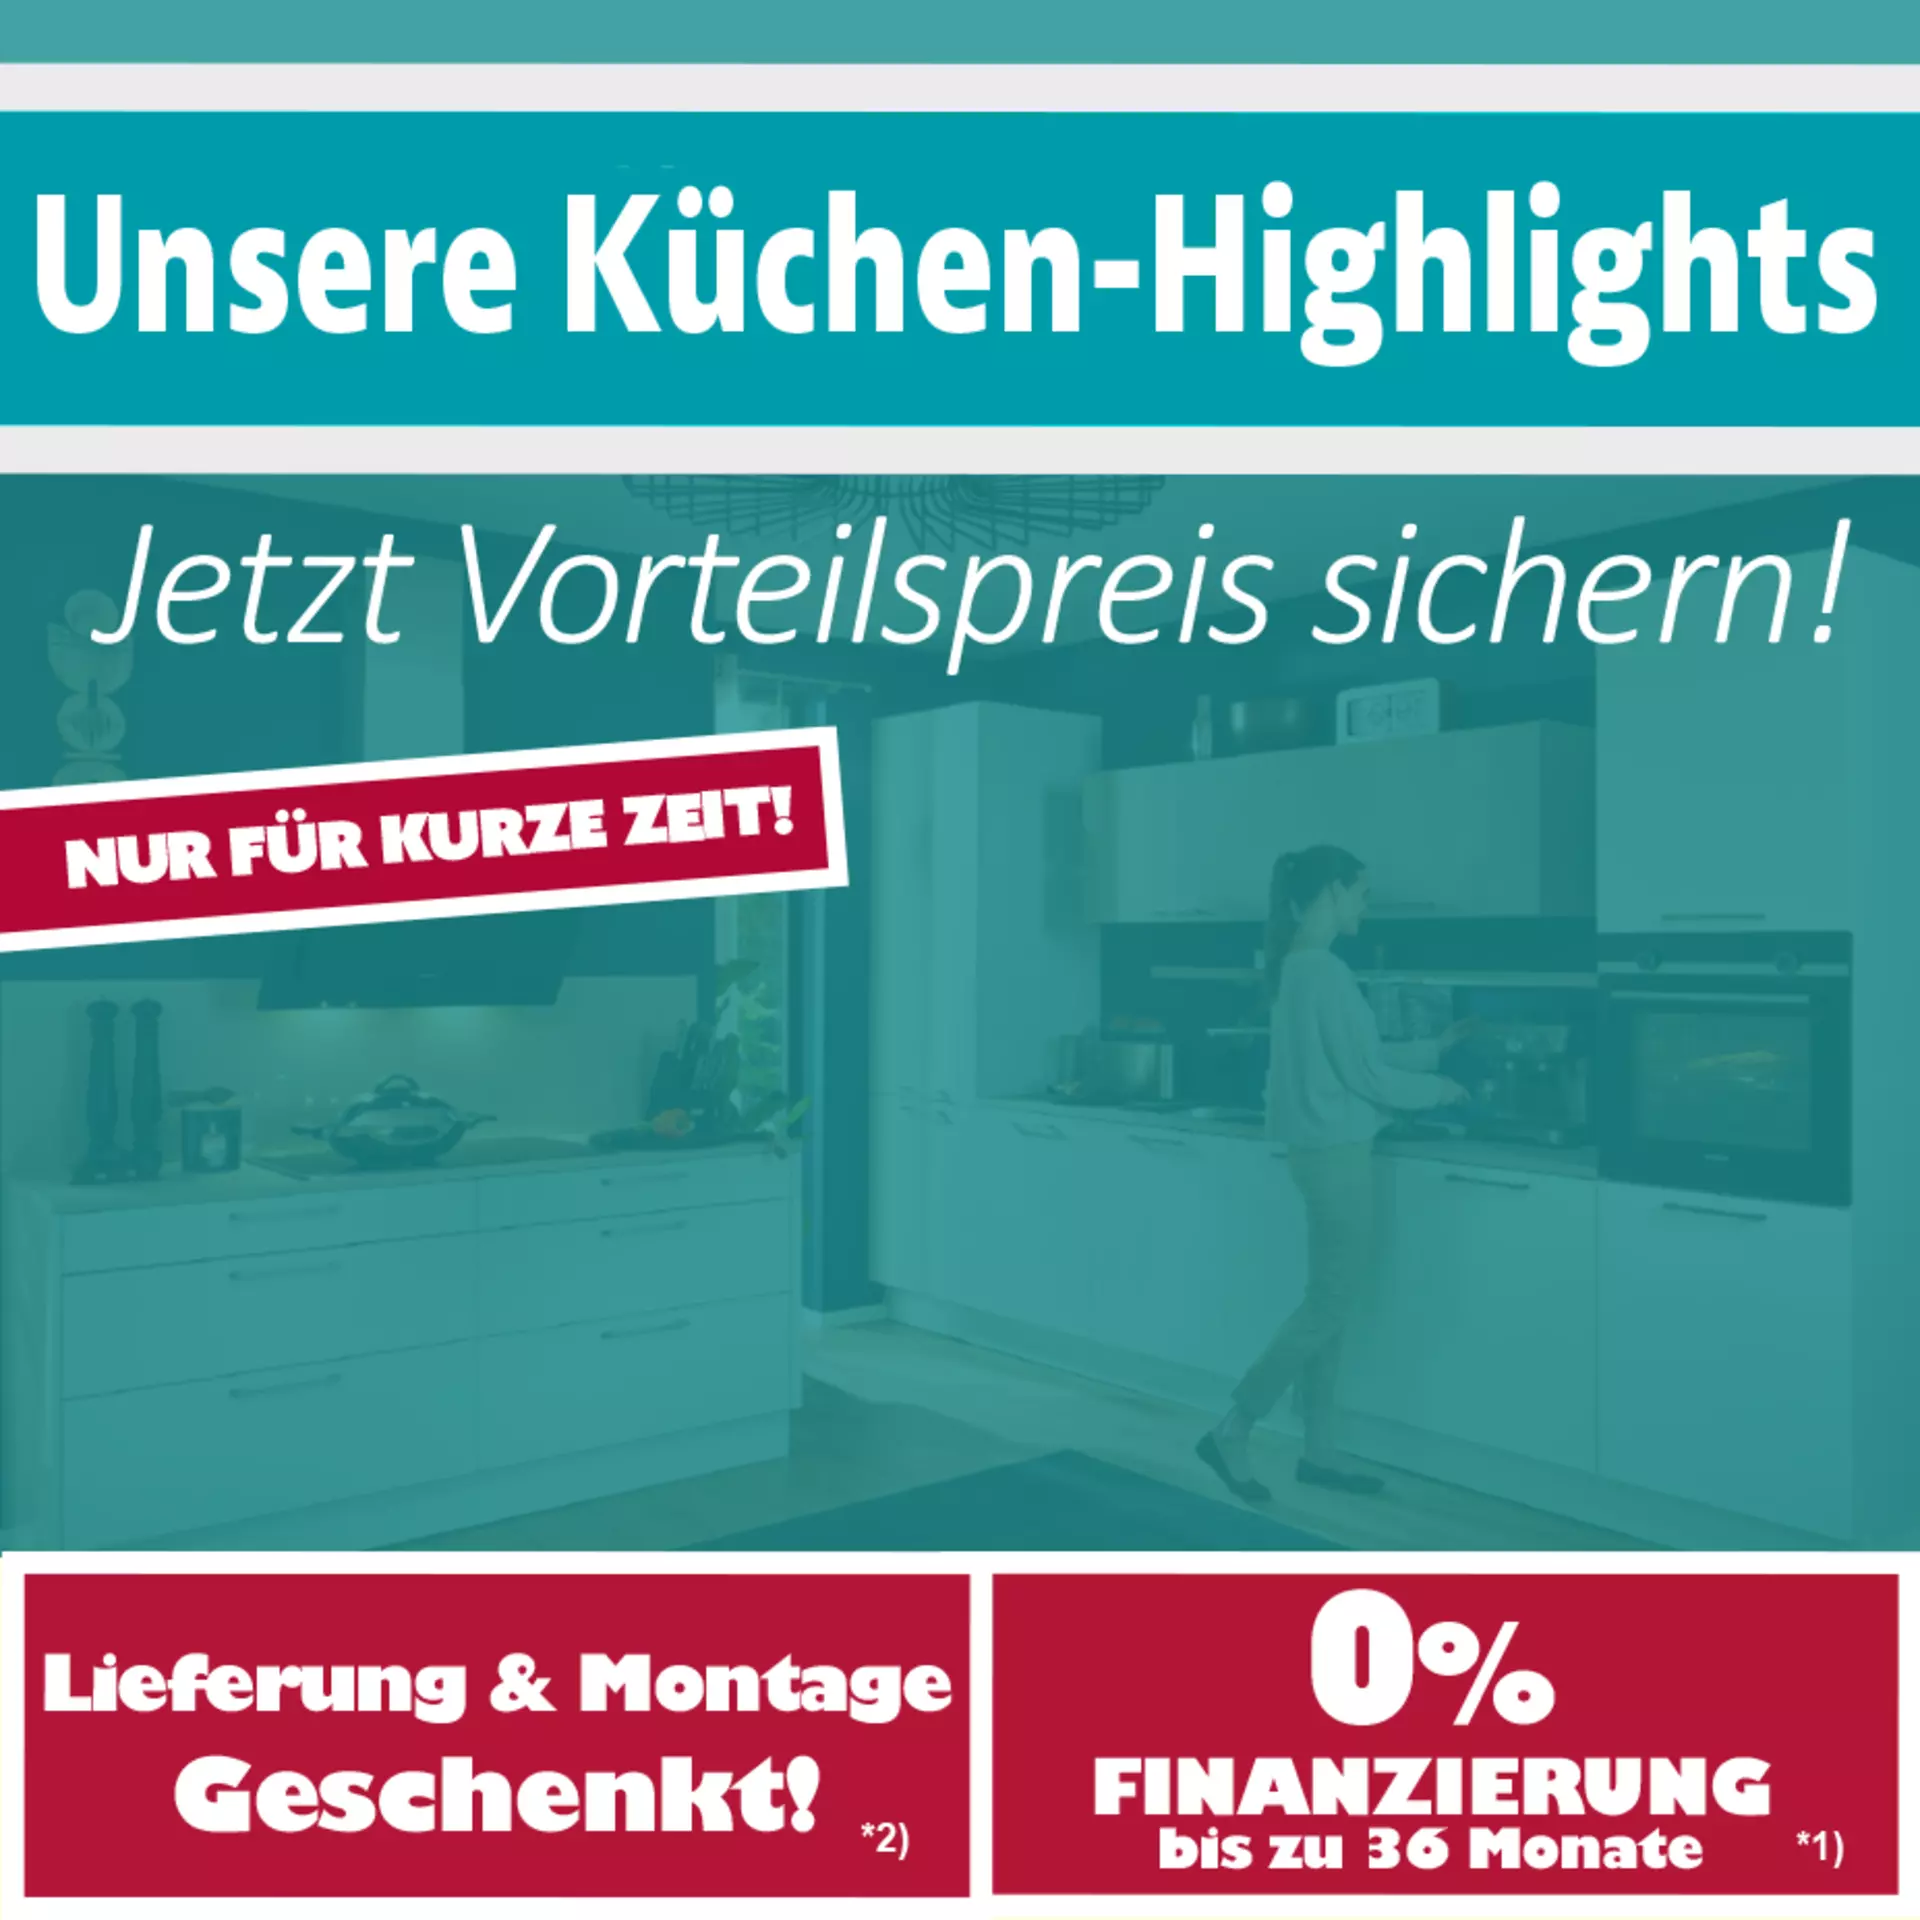 Unsere Küchen-Highlights - jetzt Vorteilspreis sichern! Nur für kurze Zeit bei Innovation Küche und Bad in Günzburg